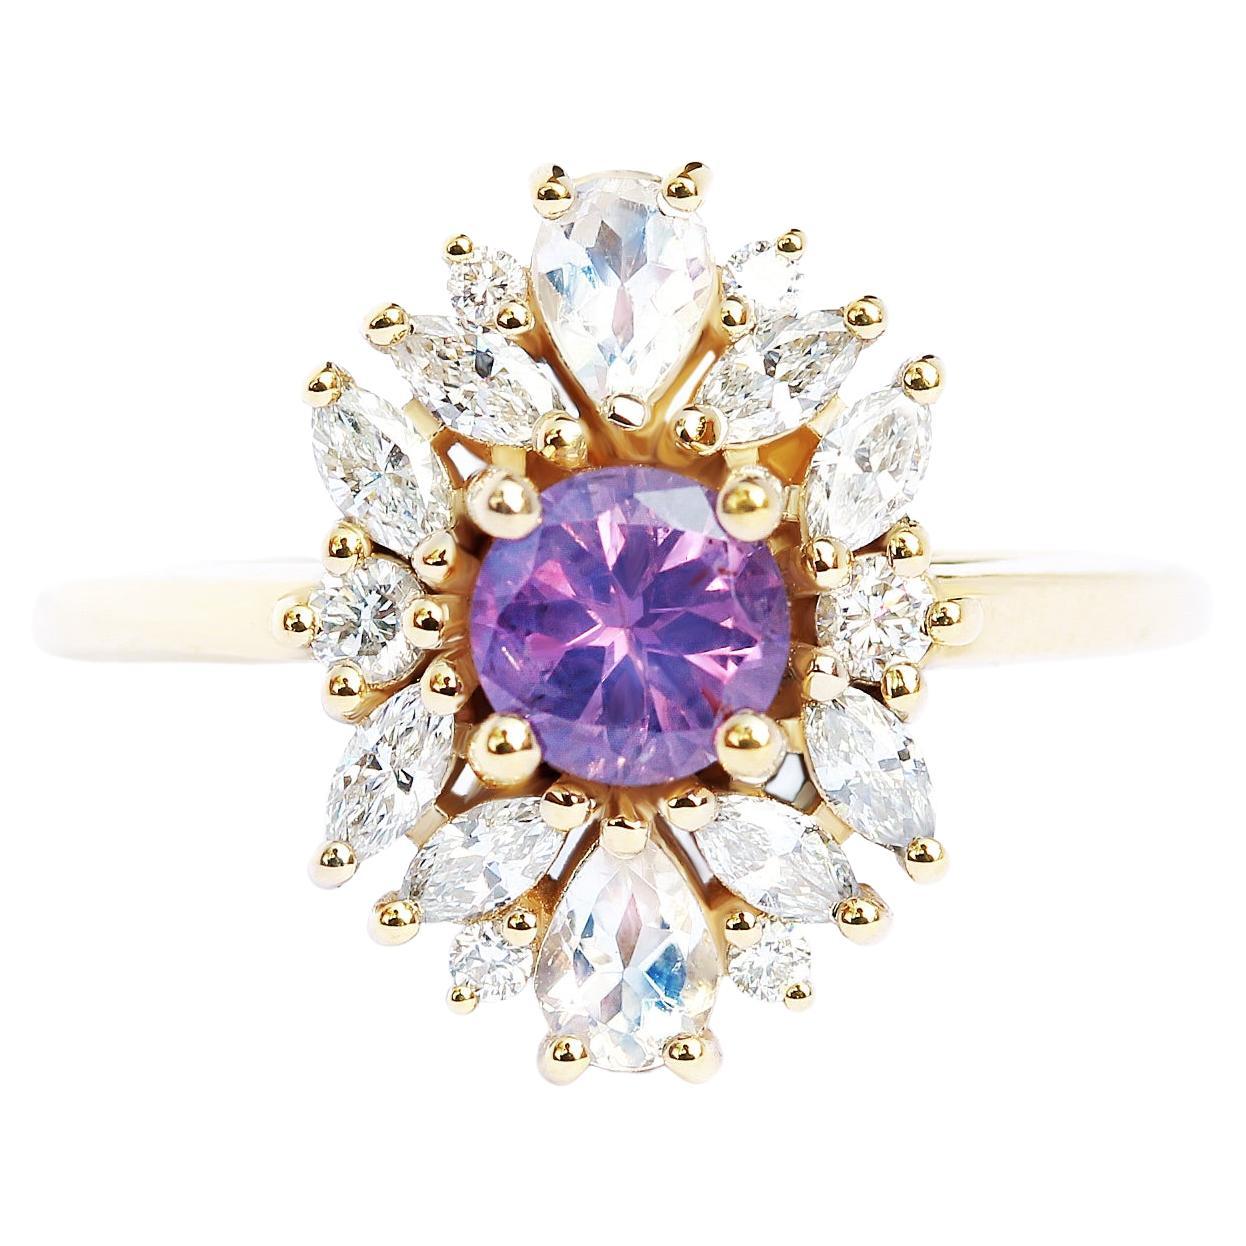 Lavender sapphire Cluster Unique Engagement Ring, Alternative Bride "Odisea" For Sale